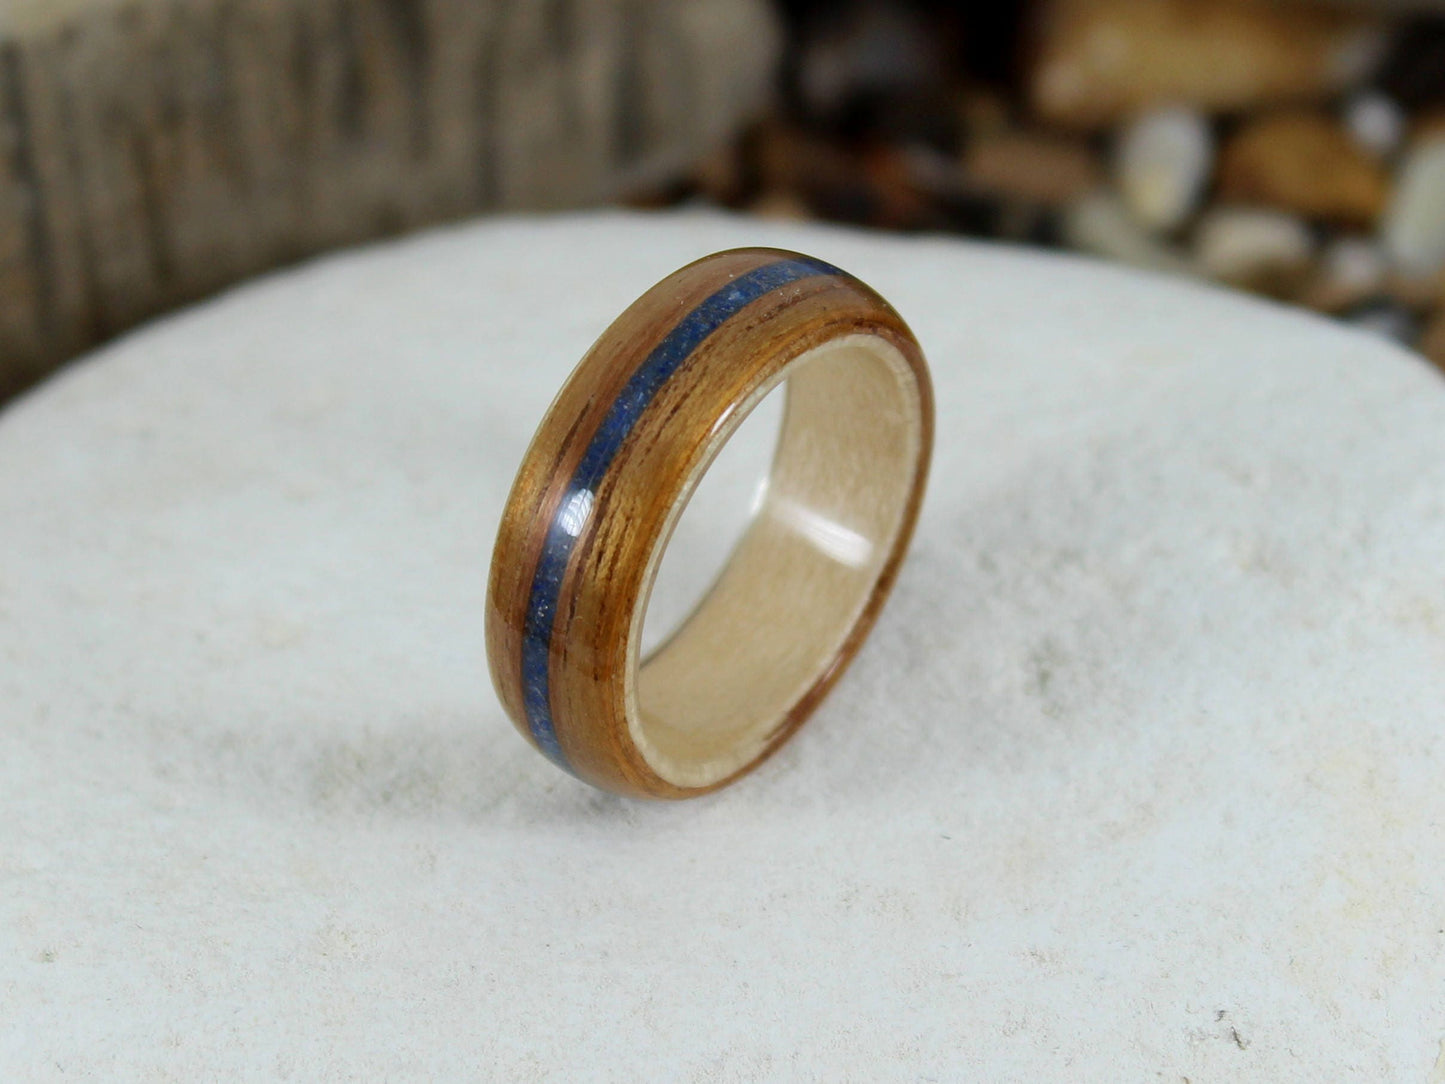 Koa Wood Ring with Maple & Blue Lapis Bent Wood Ring